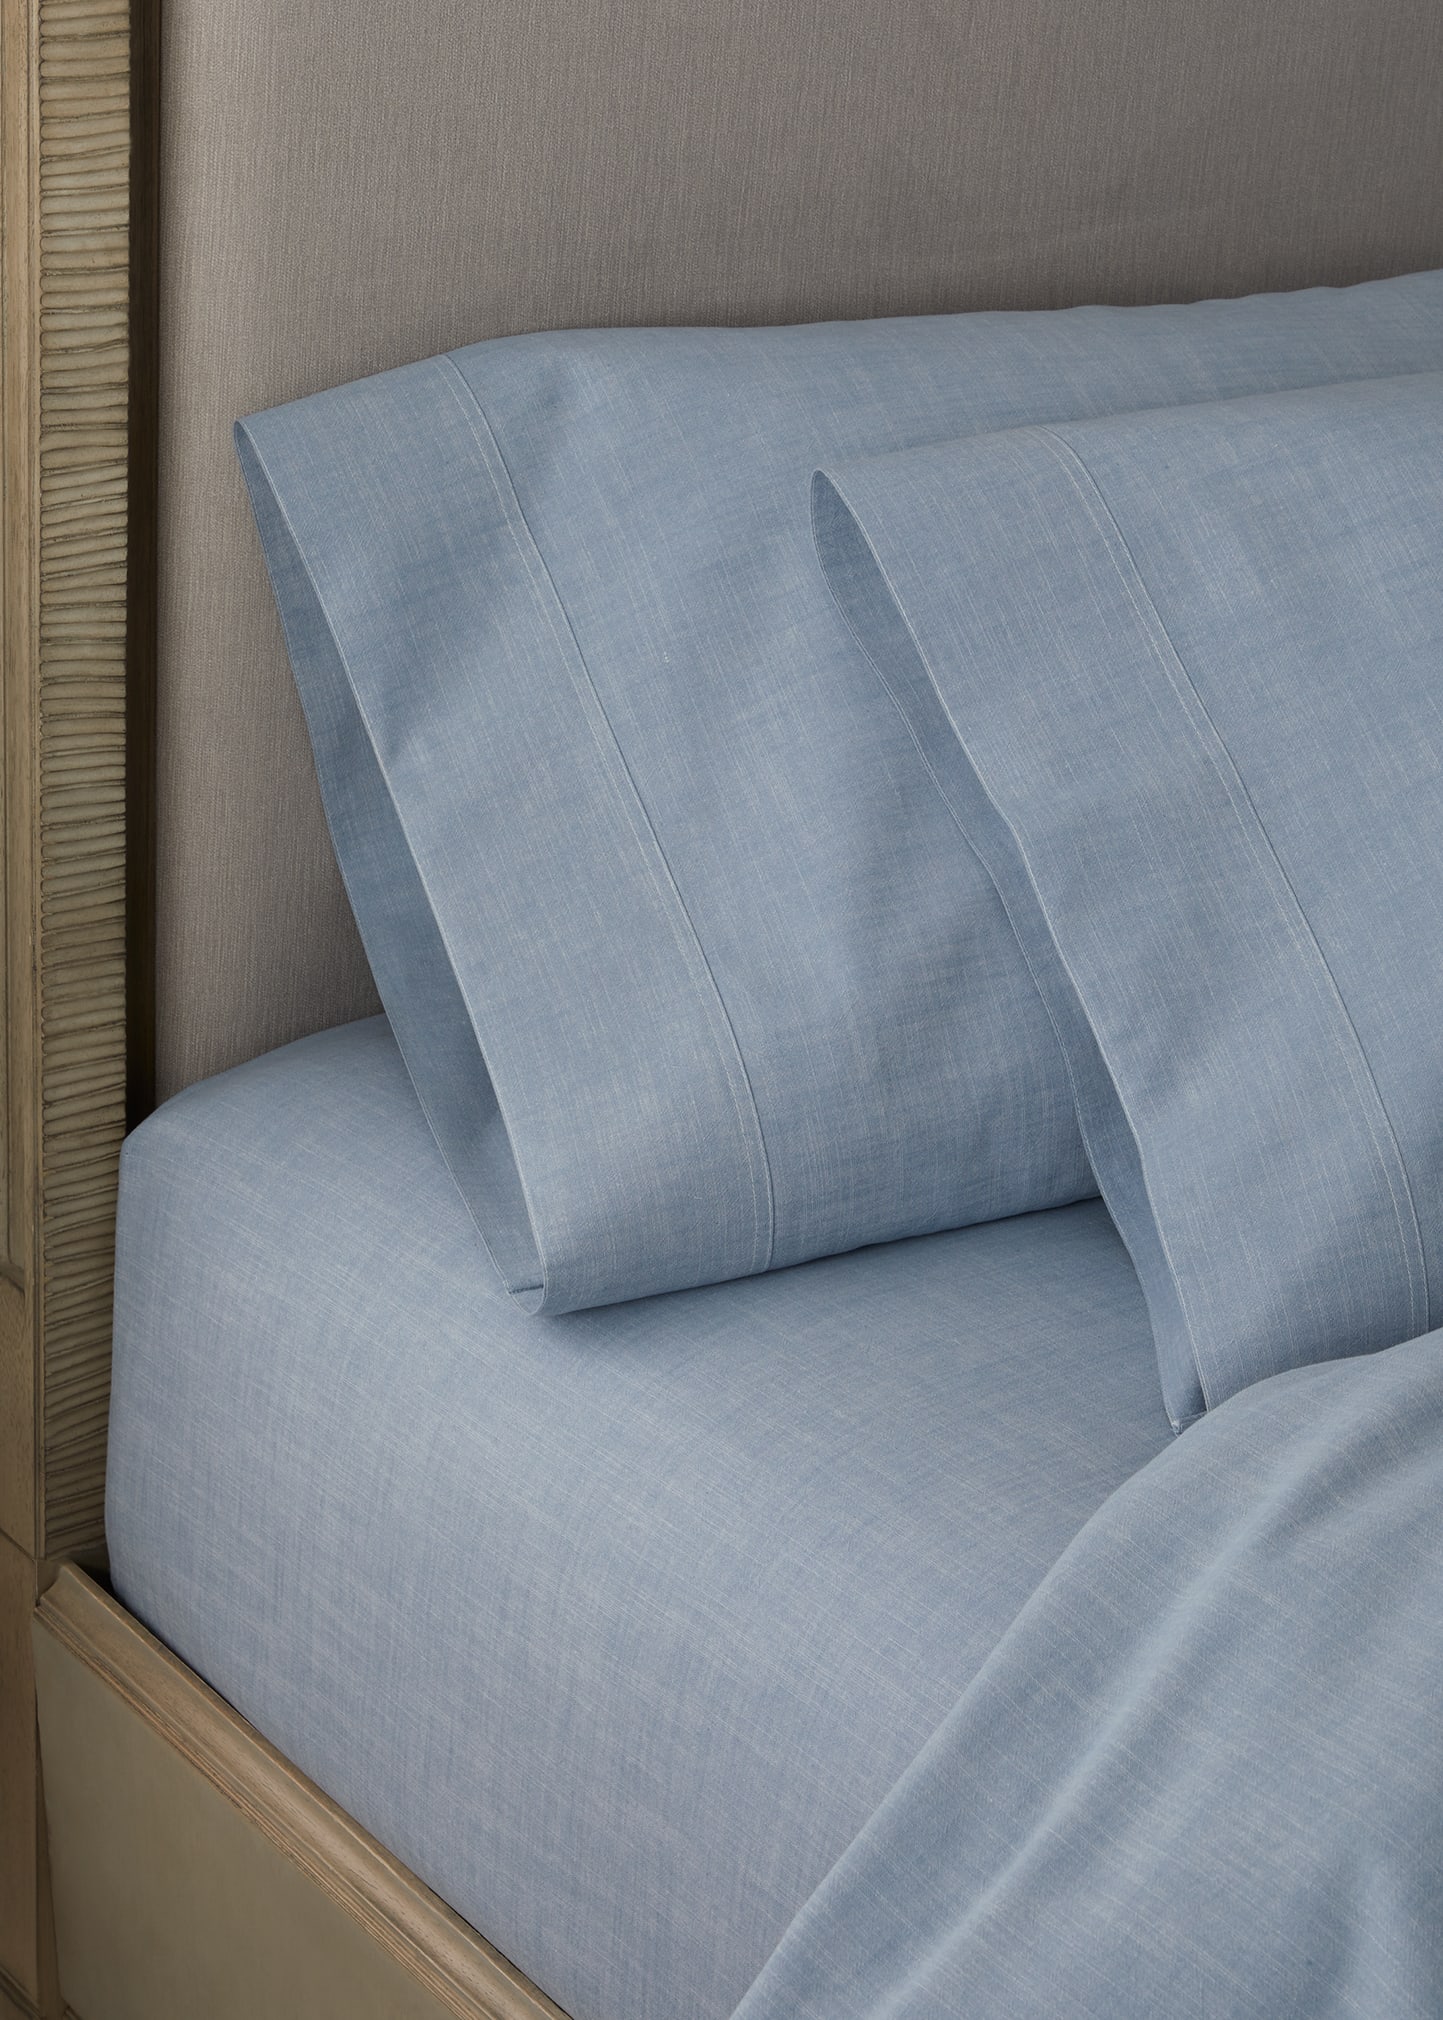 Ralph Lauren Workshirt Chambray Standard Pillow Case In Blue